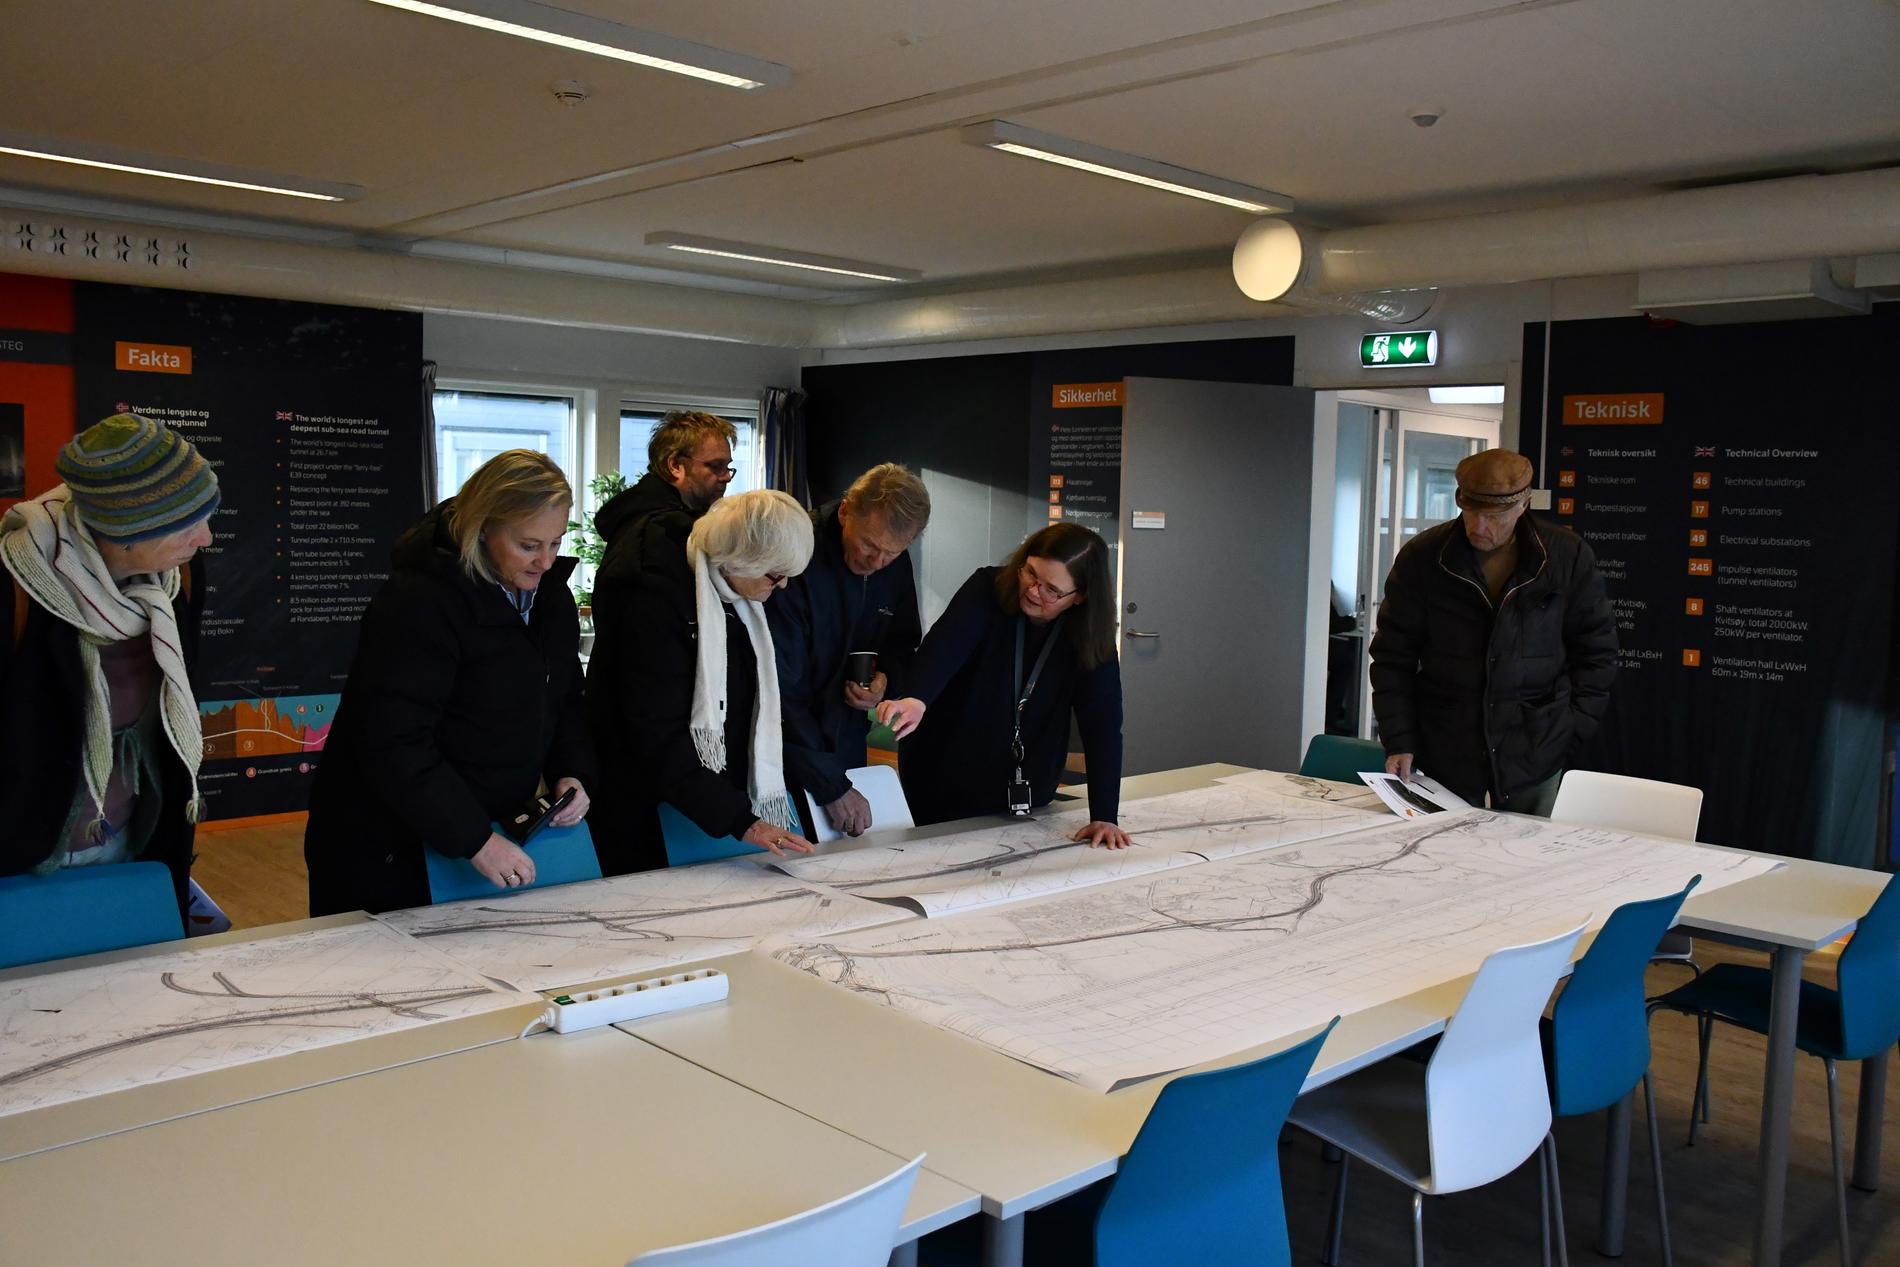 Mange møtte opp da Statens vegvesen hadde åpen kontordag - og har det frem til klokken 21.